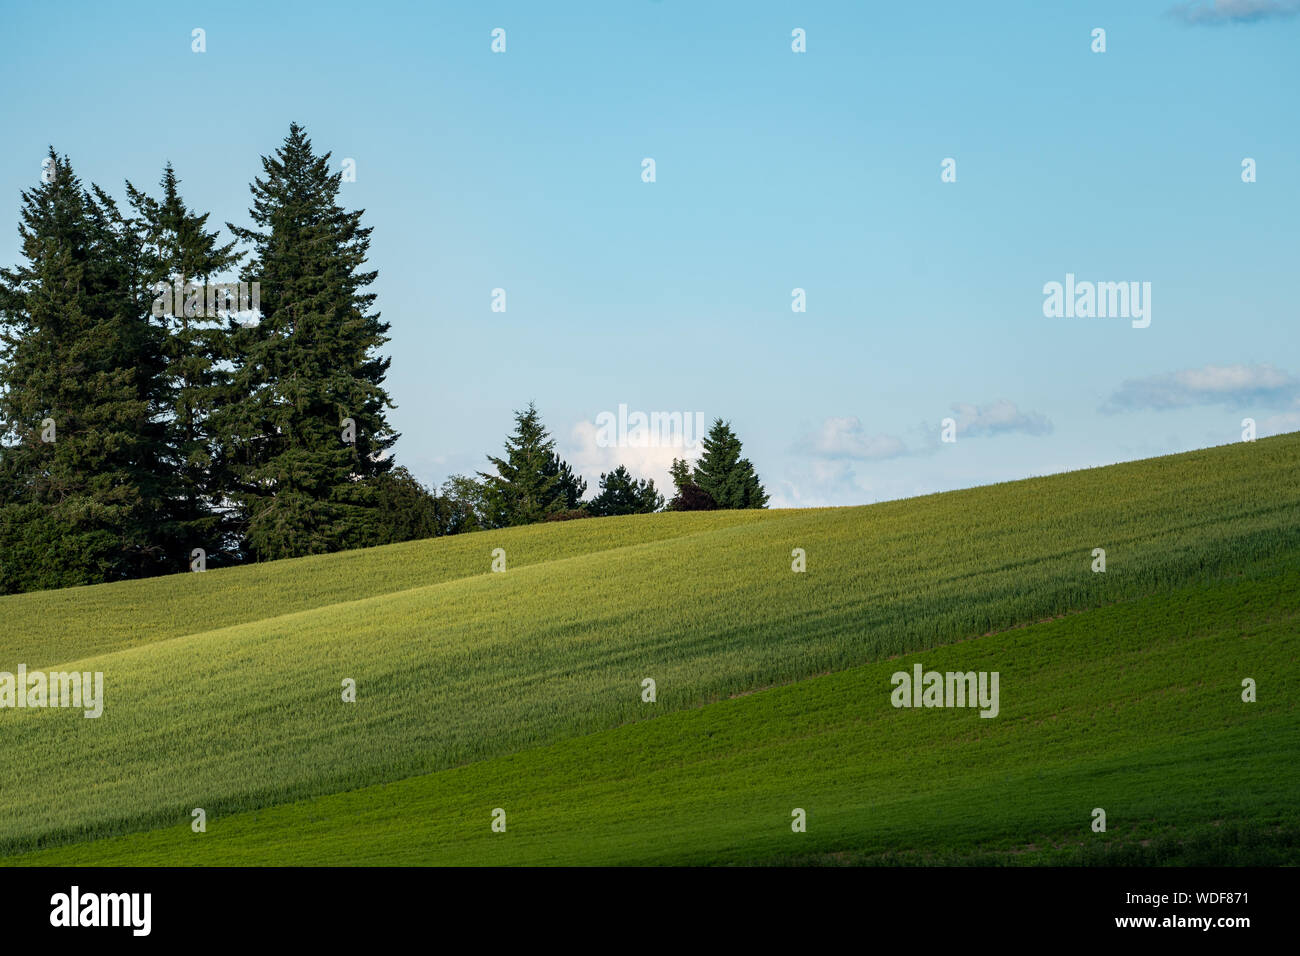 Paesaggio minimalista composizione delle verdi colline della Palouse nello Stato di Washington, con alberi sul lato sinistro. Foto Stock